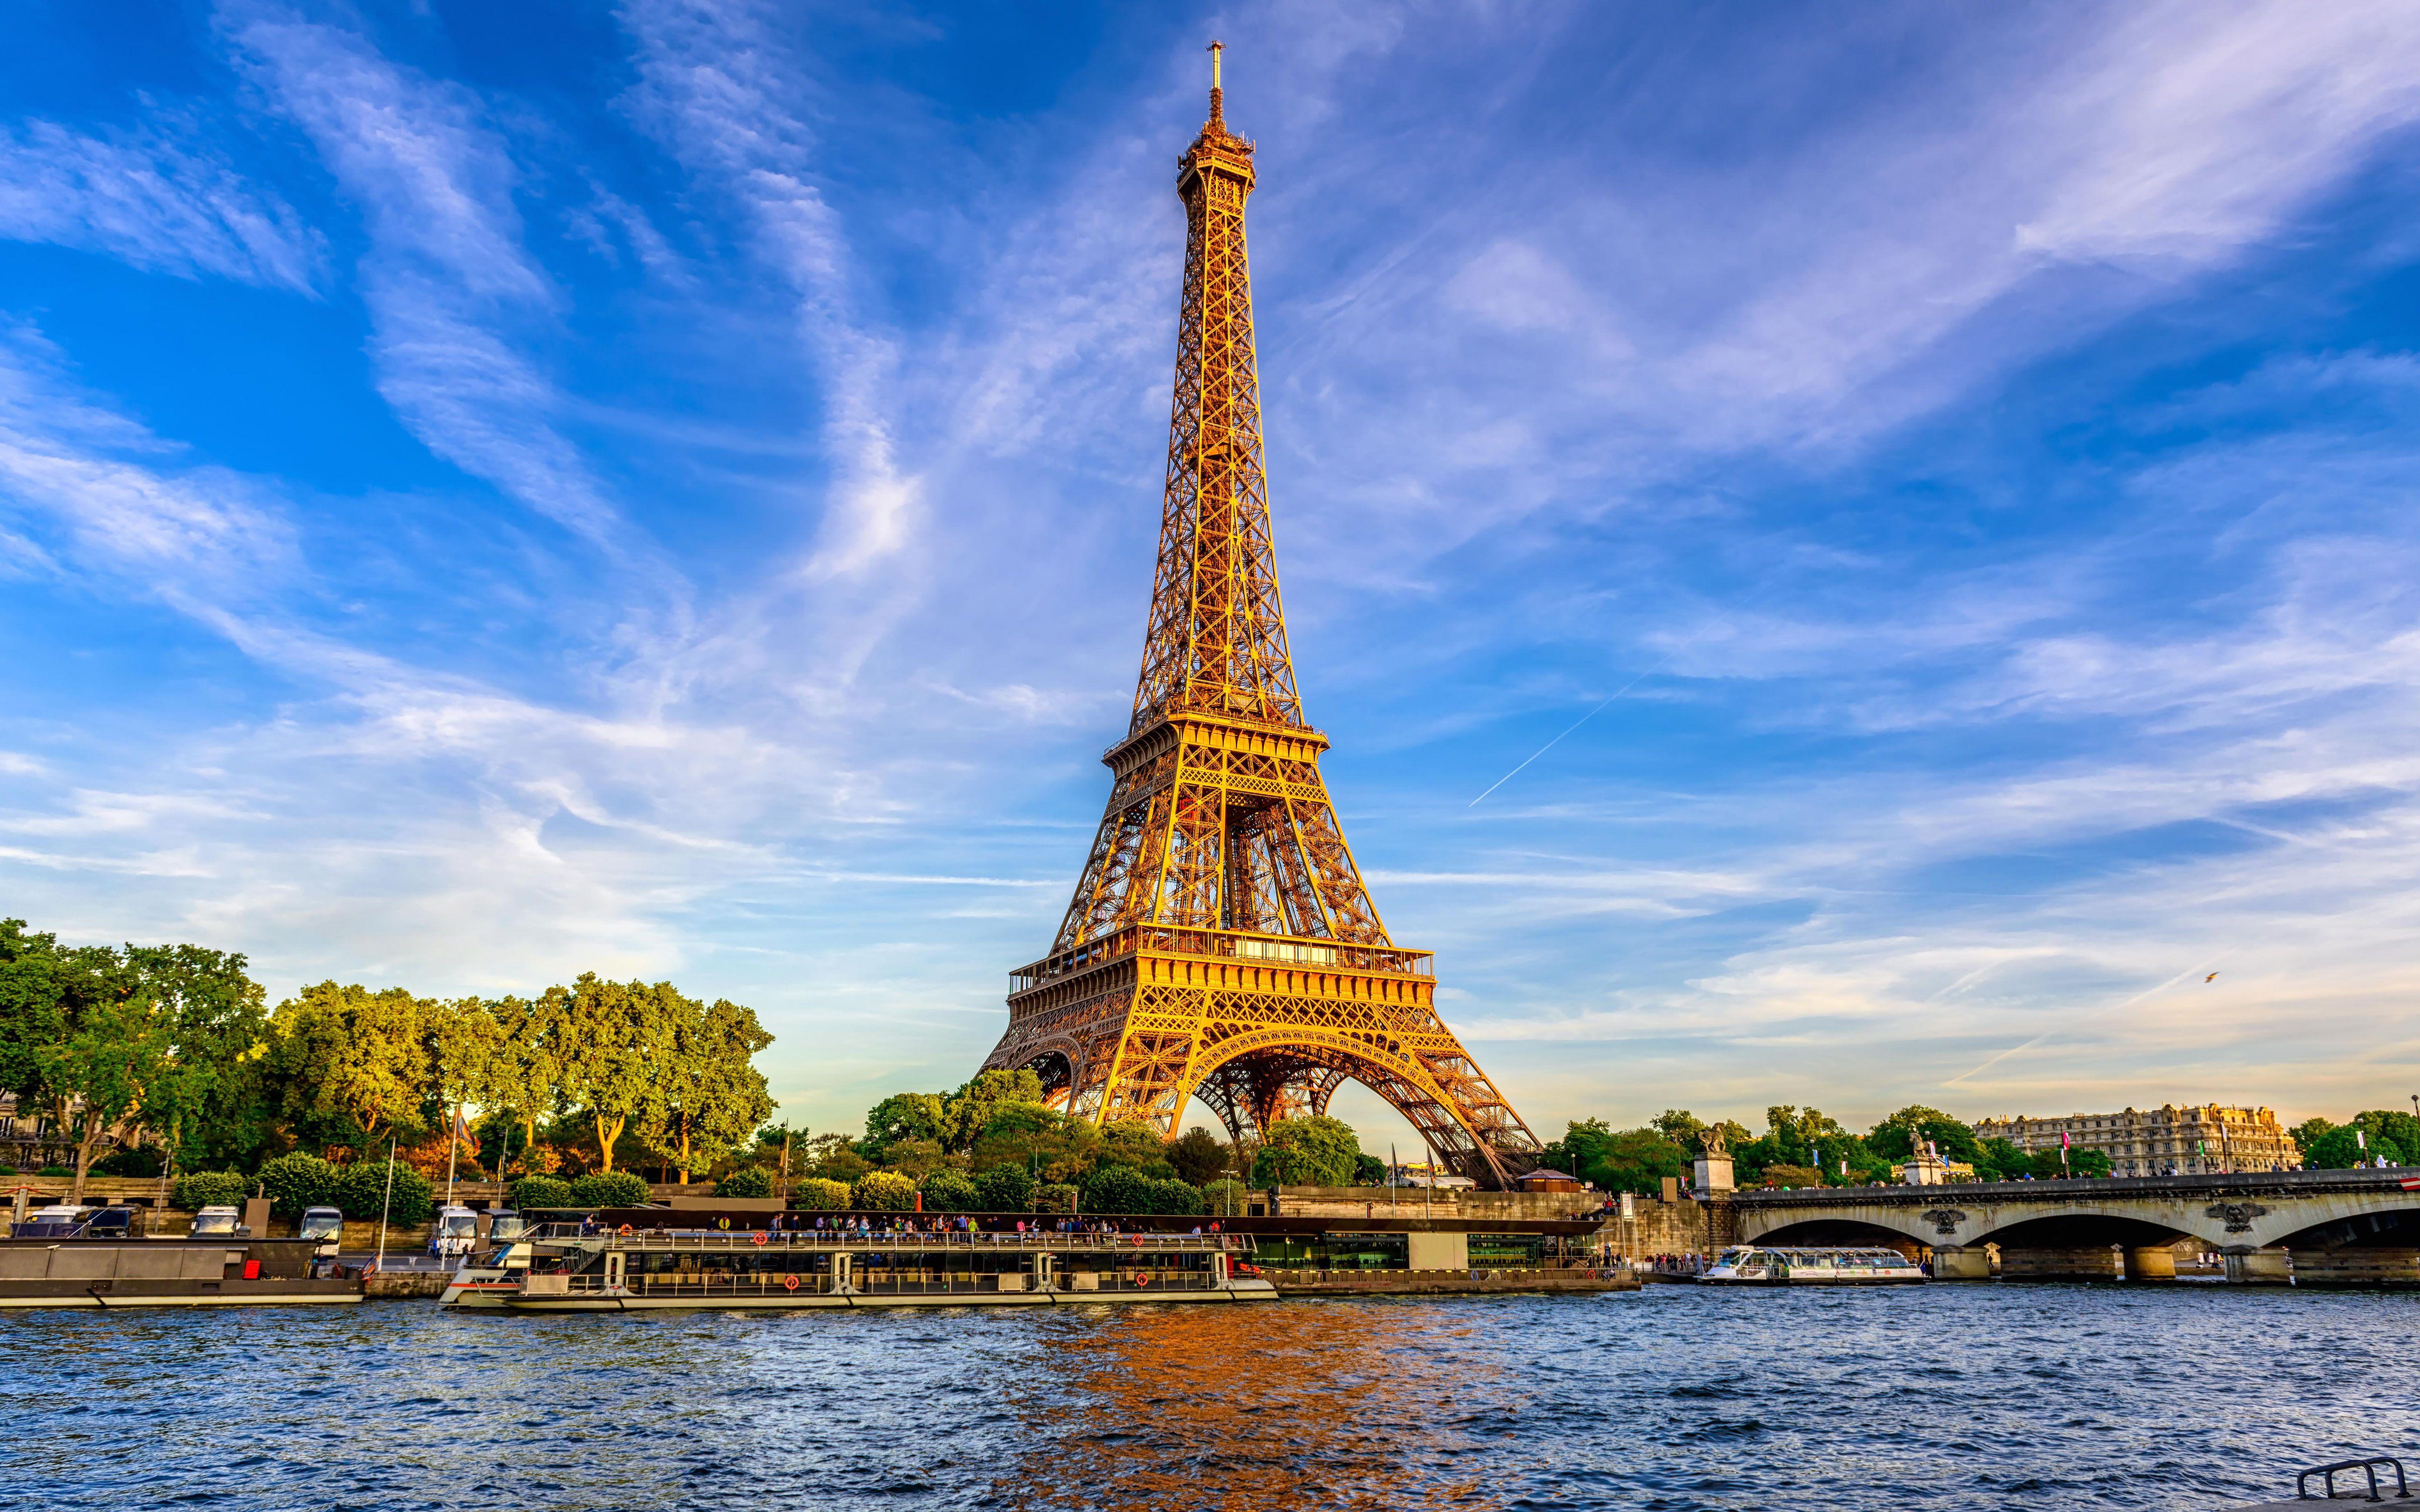 Fr страна. Эйфелева башня в Париже. Эйфель башня Франция. Эйфелева башня. Г. А. Эйфель. Эйфель башня Tour Eiffel.